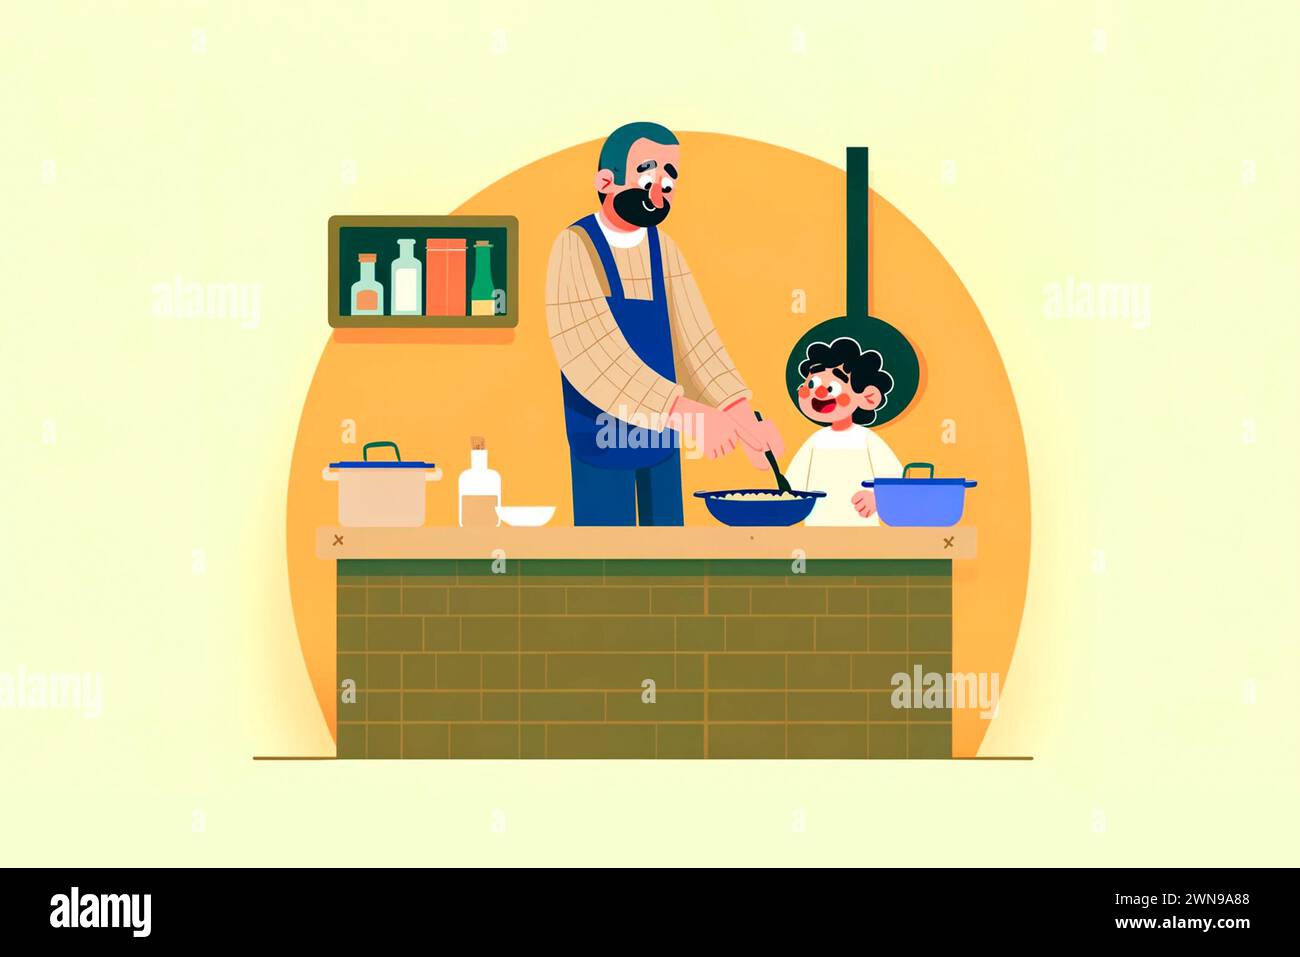 Eine bezaubernde Illustration eines Vaters, der seinem Kind das Kochen beibringt, was die Freude an der kulinarischen Kunst fördert. Stockfoto